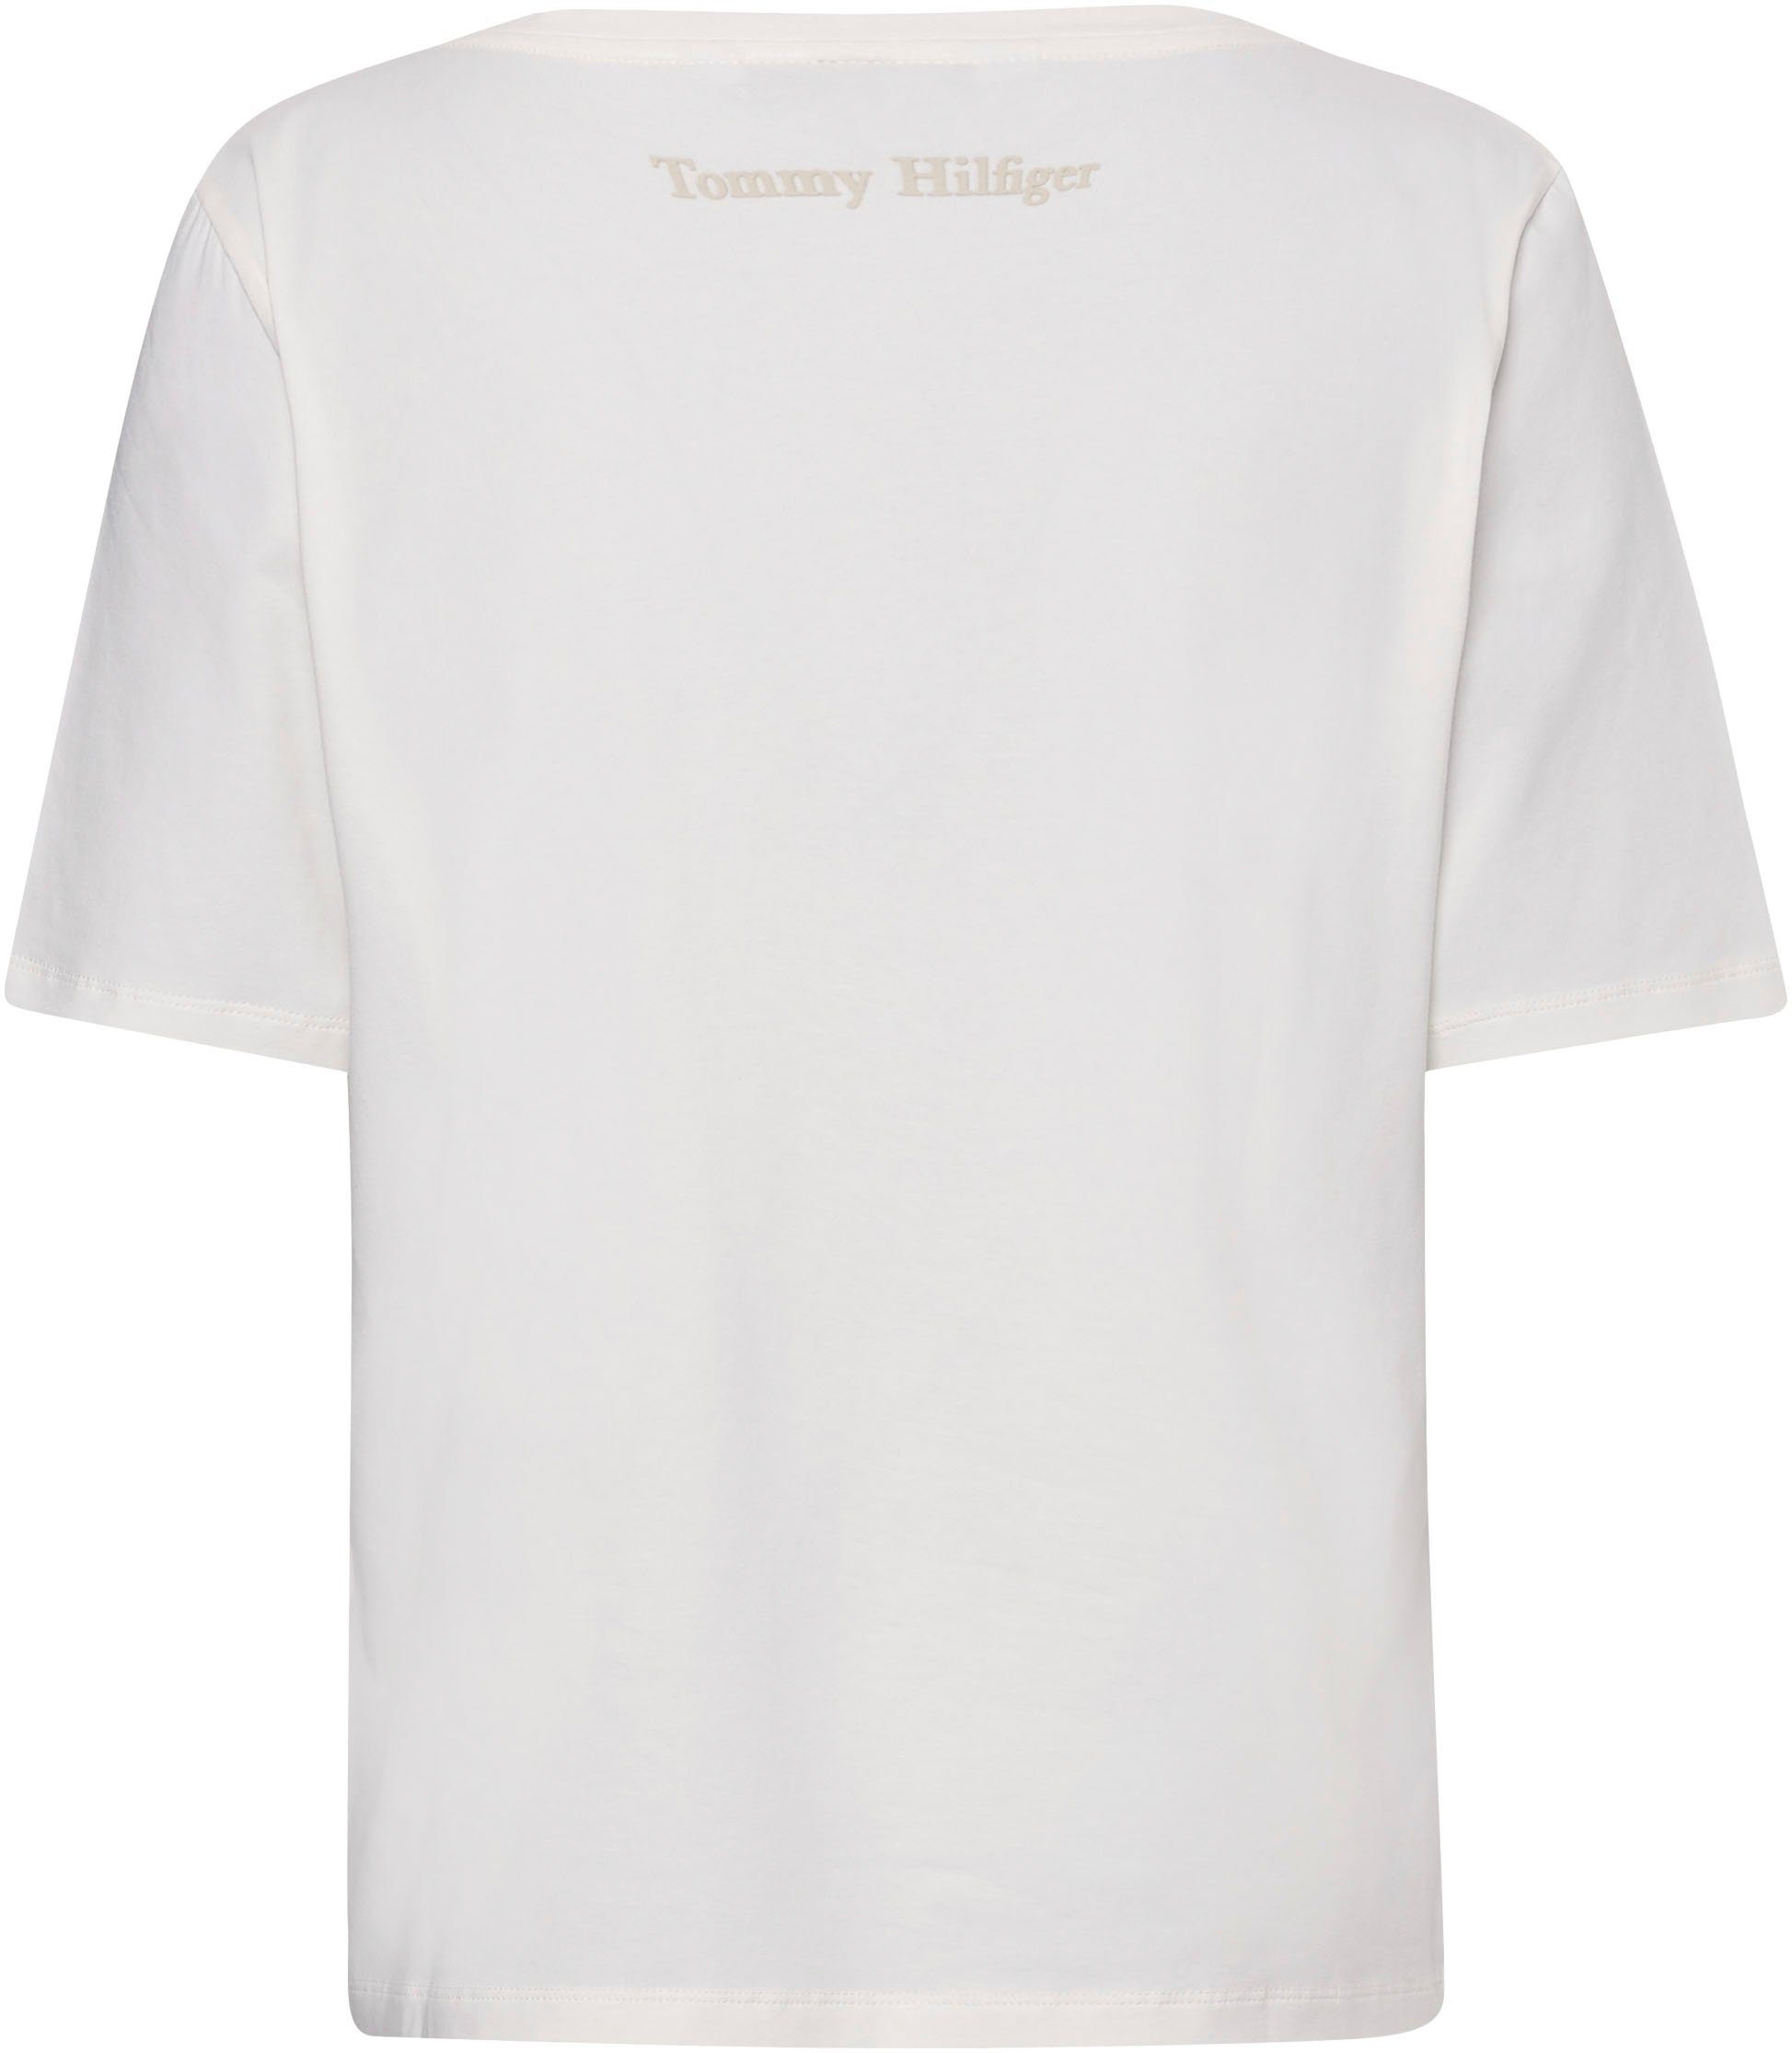 T-Shirt Hilfiger ecru Tommy mit Markenlabel